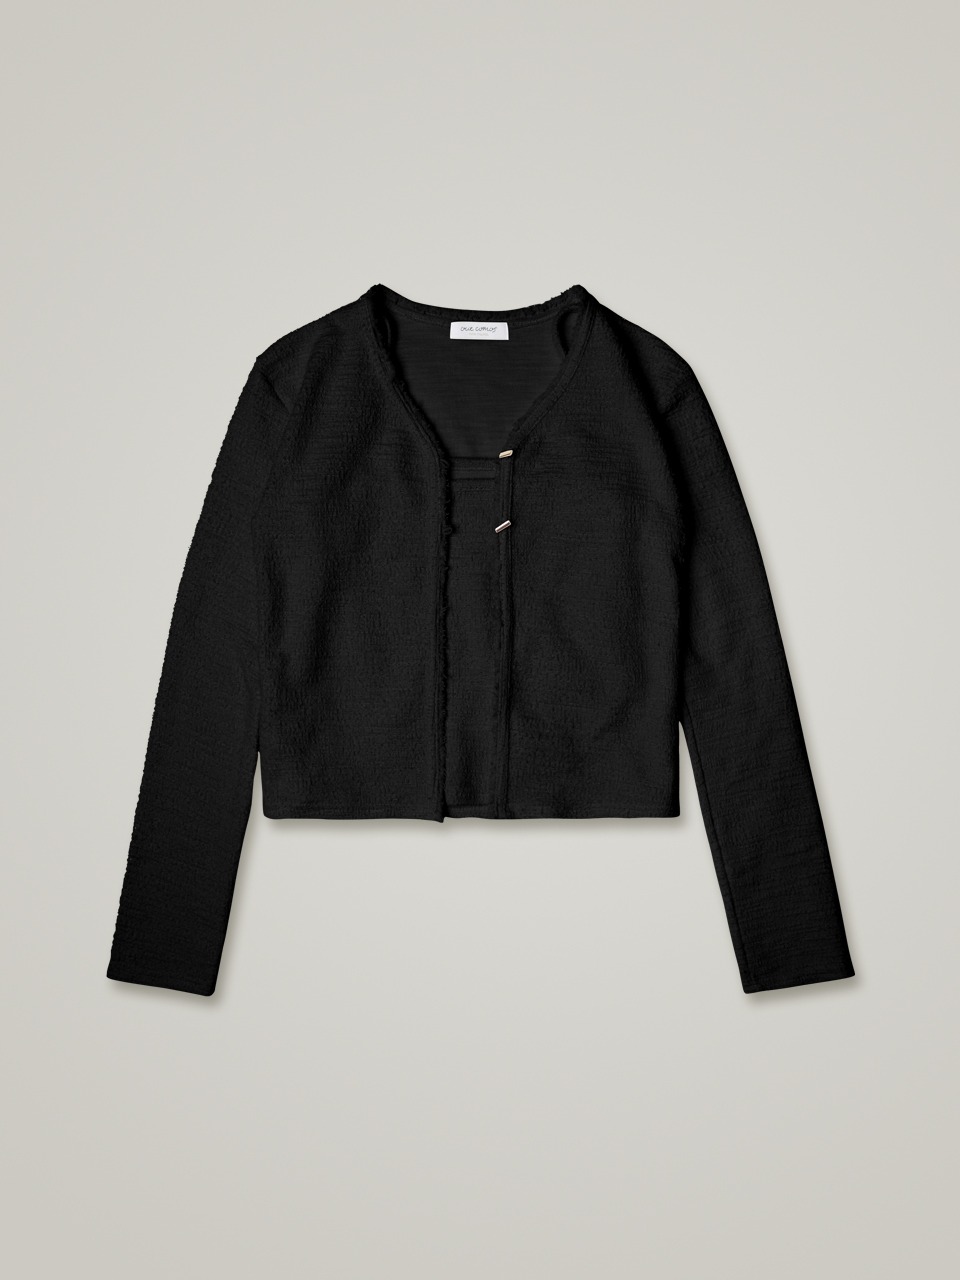 comos 770 tweed two-button cardigan set (black)